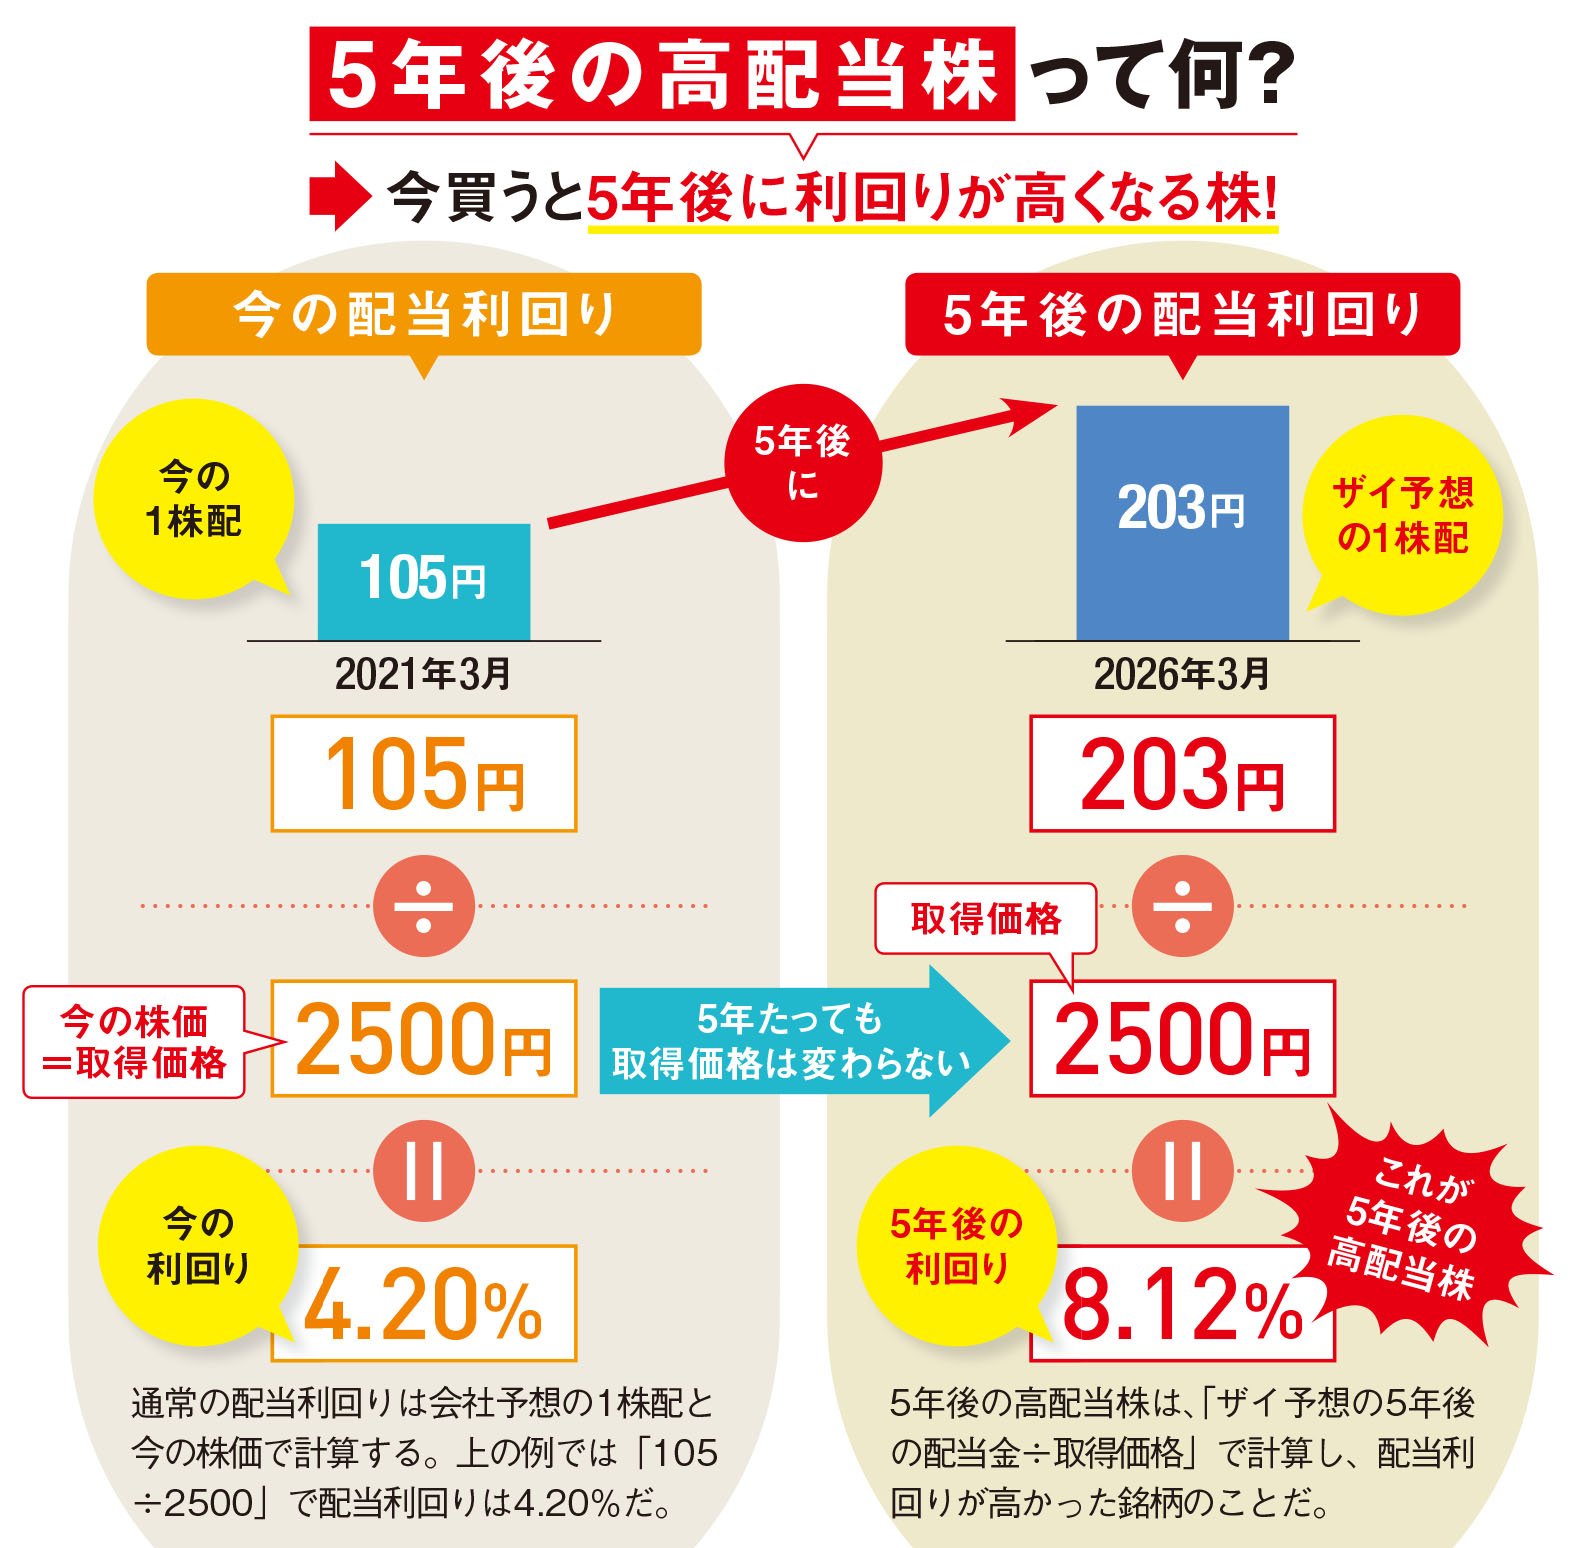 配当 ランキング 株式 予想配当利回りランキング: 日本経済新聞